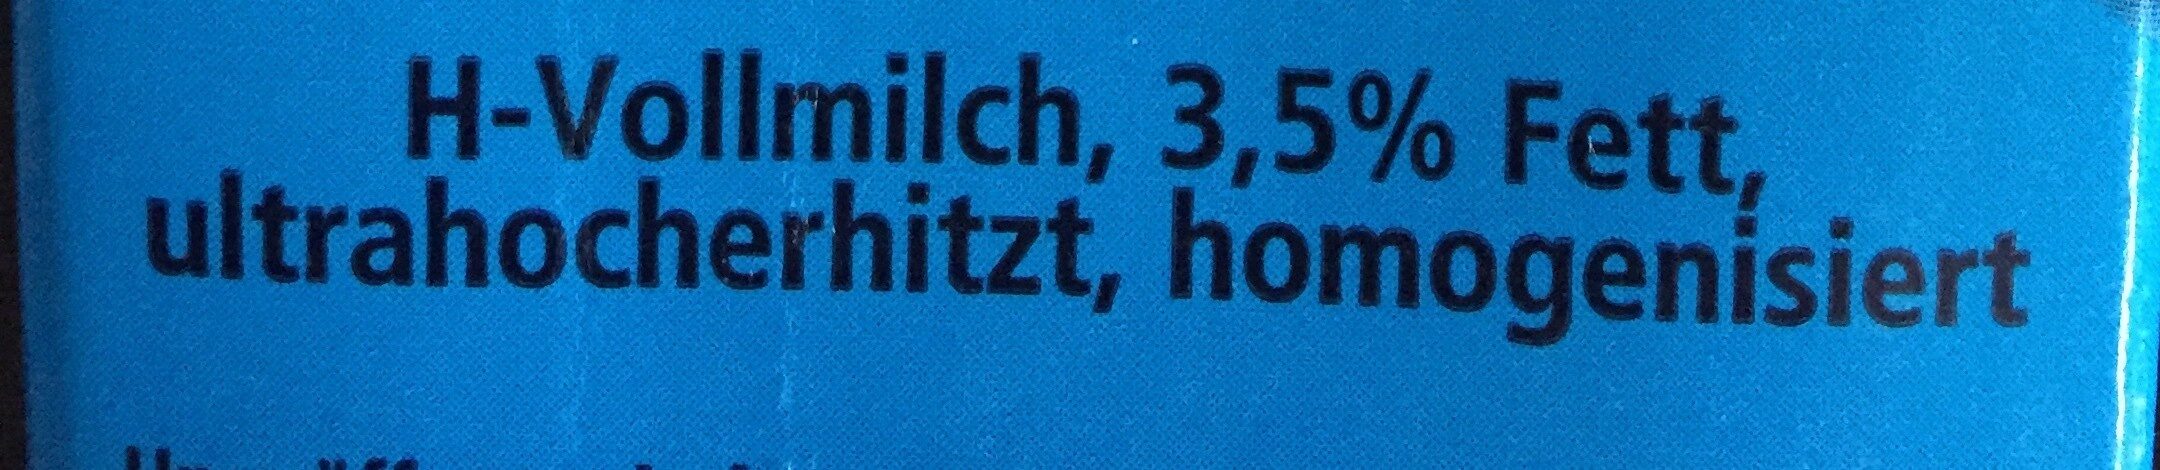 Milch Vollmilch Haltbare - Ingrediënten - de